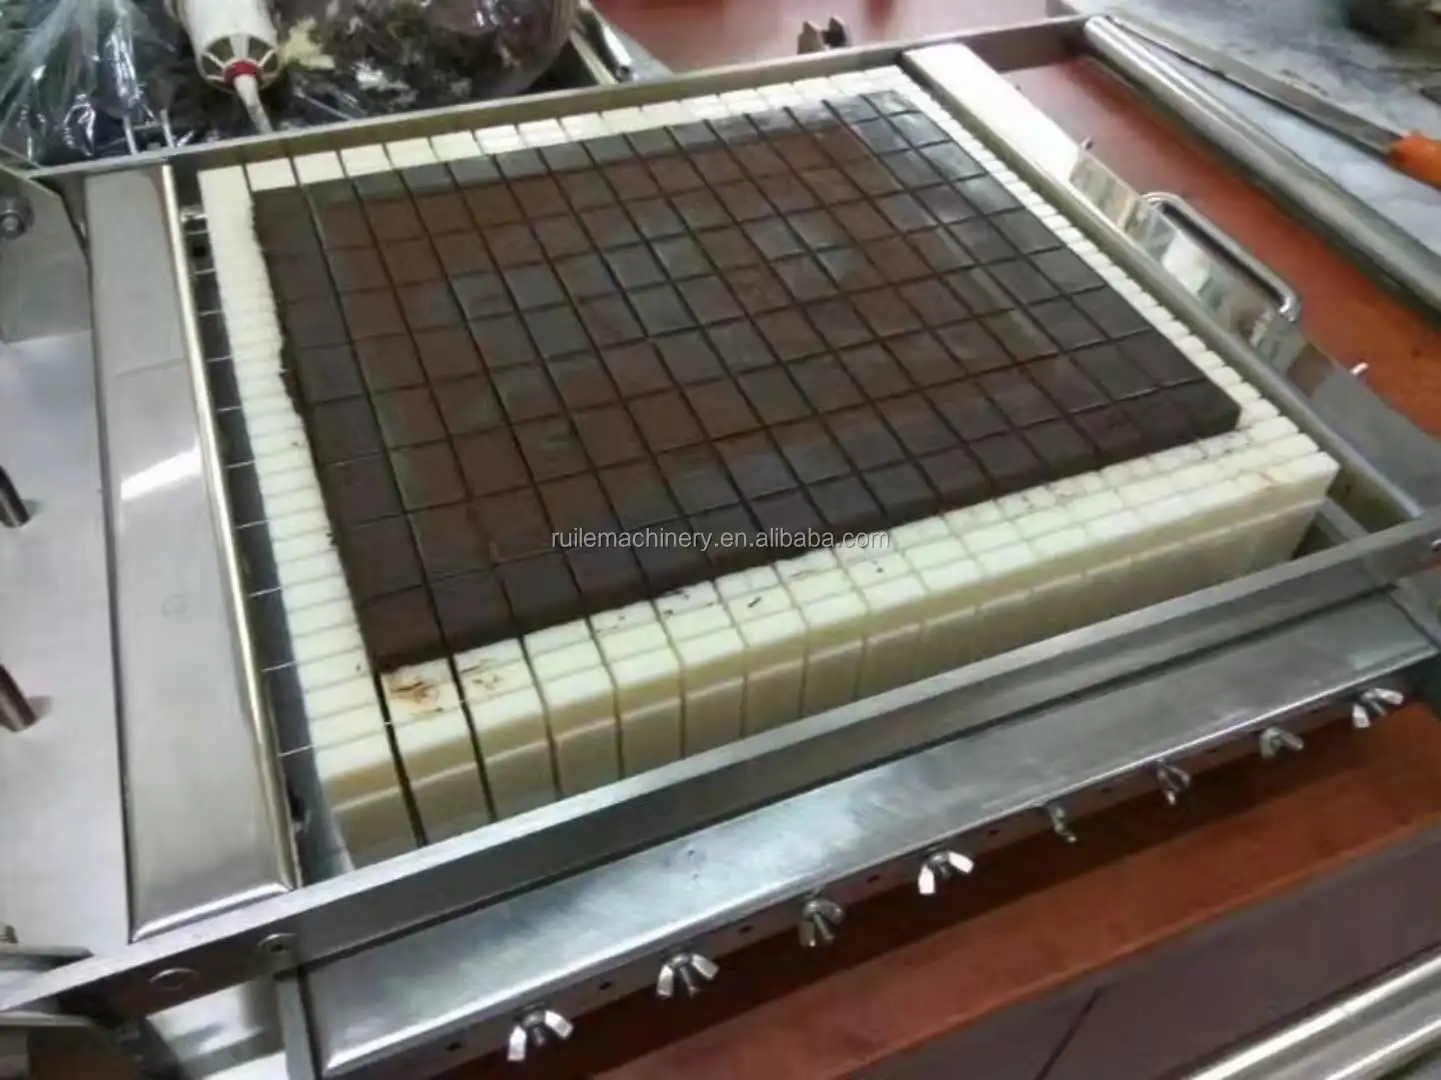 Manual Chocolate Cutting Machine Bar Square Grid Cake Caramel Cutter